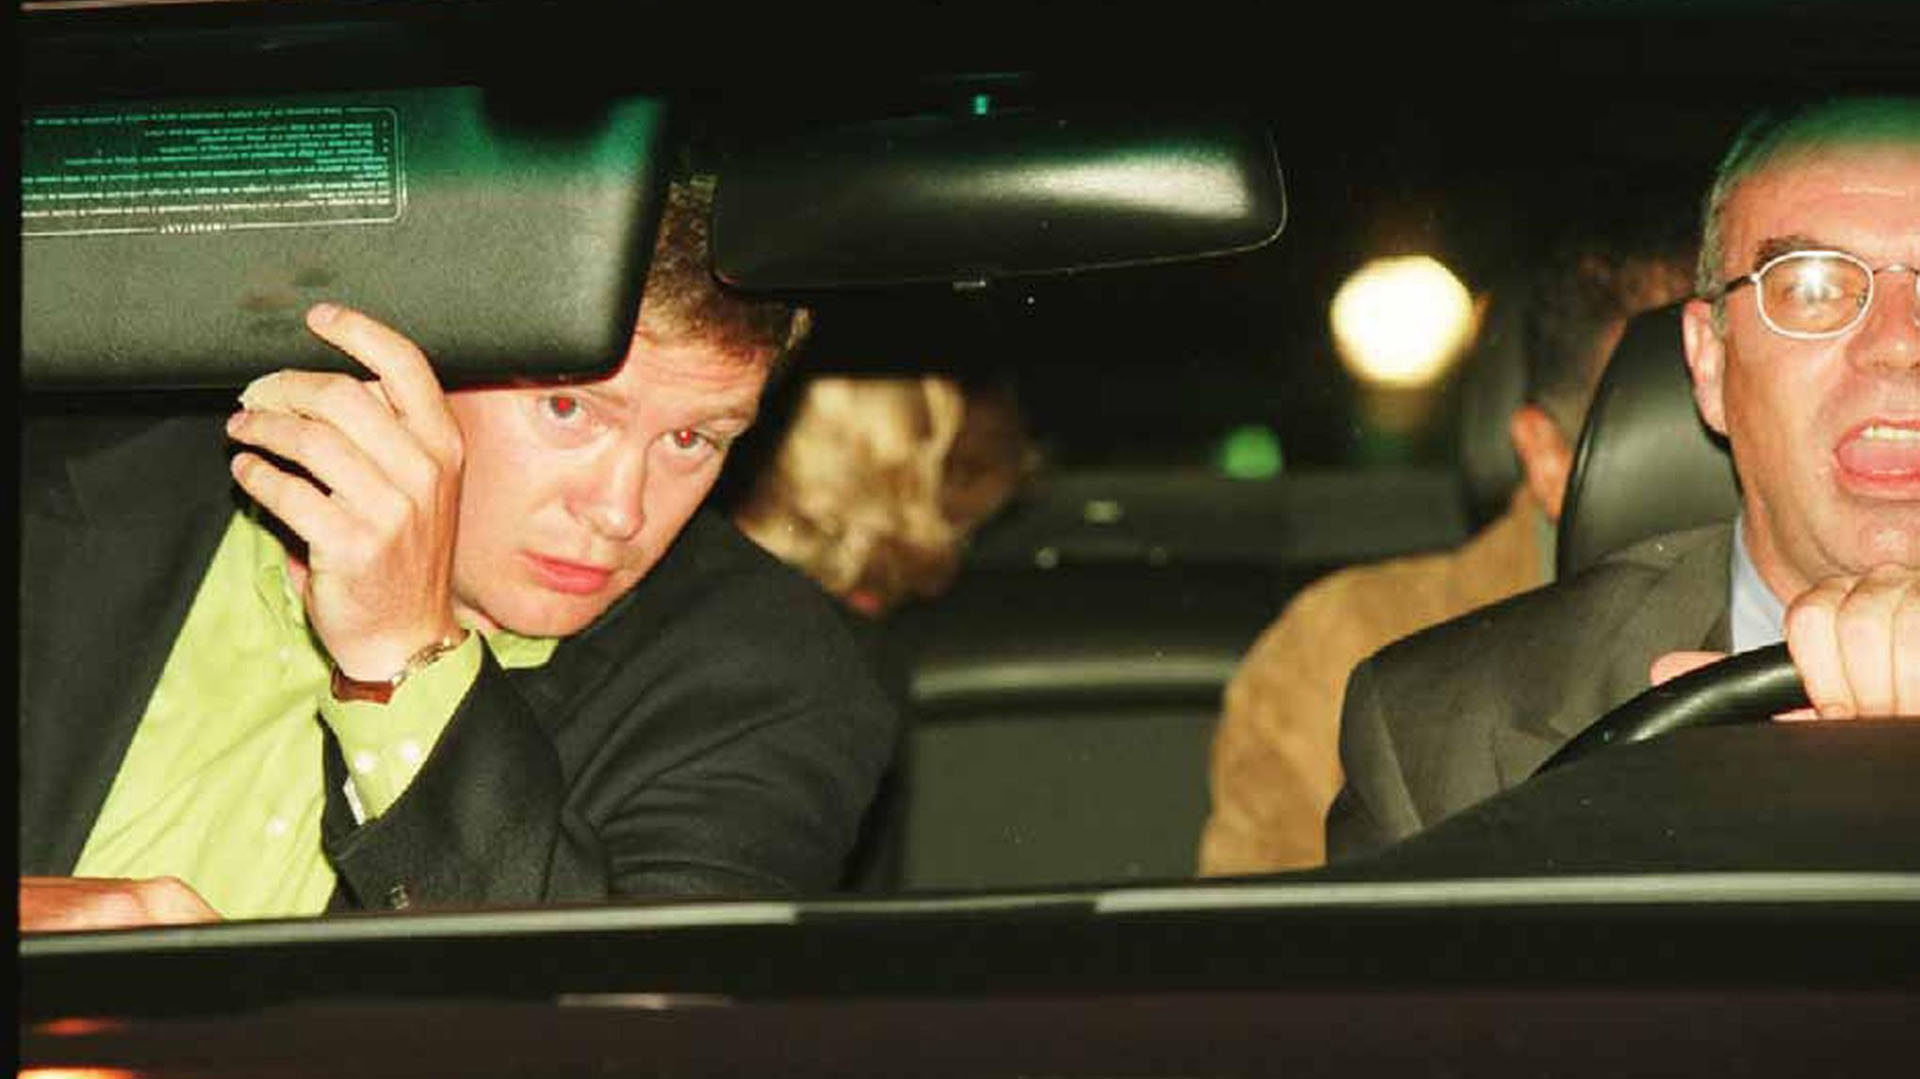 FOTO DE ARCHIVO: Diana Spencer y Dodi Al-Fayed (ambos parcialmente visibles en el asiento trasero), el guardaespaldas Trevor Rees-Jones (delante, a la izquierda) y el conductor Henri Paul, en su Mercedes-Benz S280, poco antes del accidente mortal en el que murieron Diana, Fayed y Paul, París, el 31 de agosto de 1997 (Getty Images)